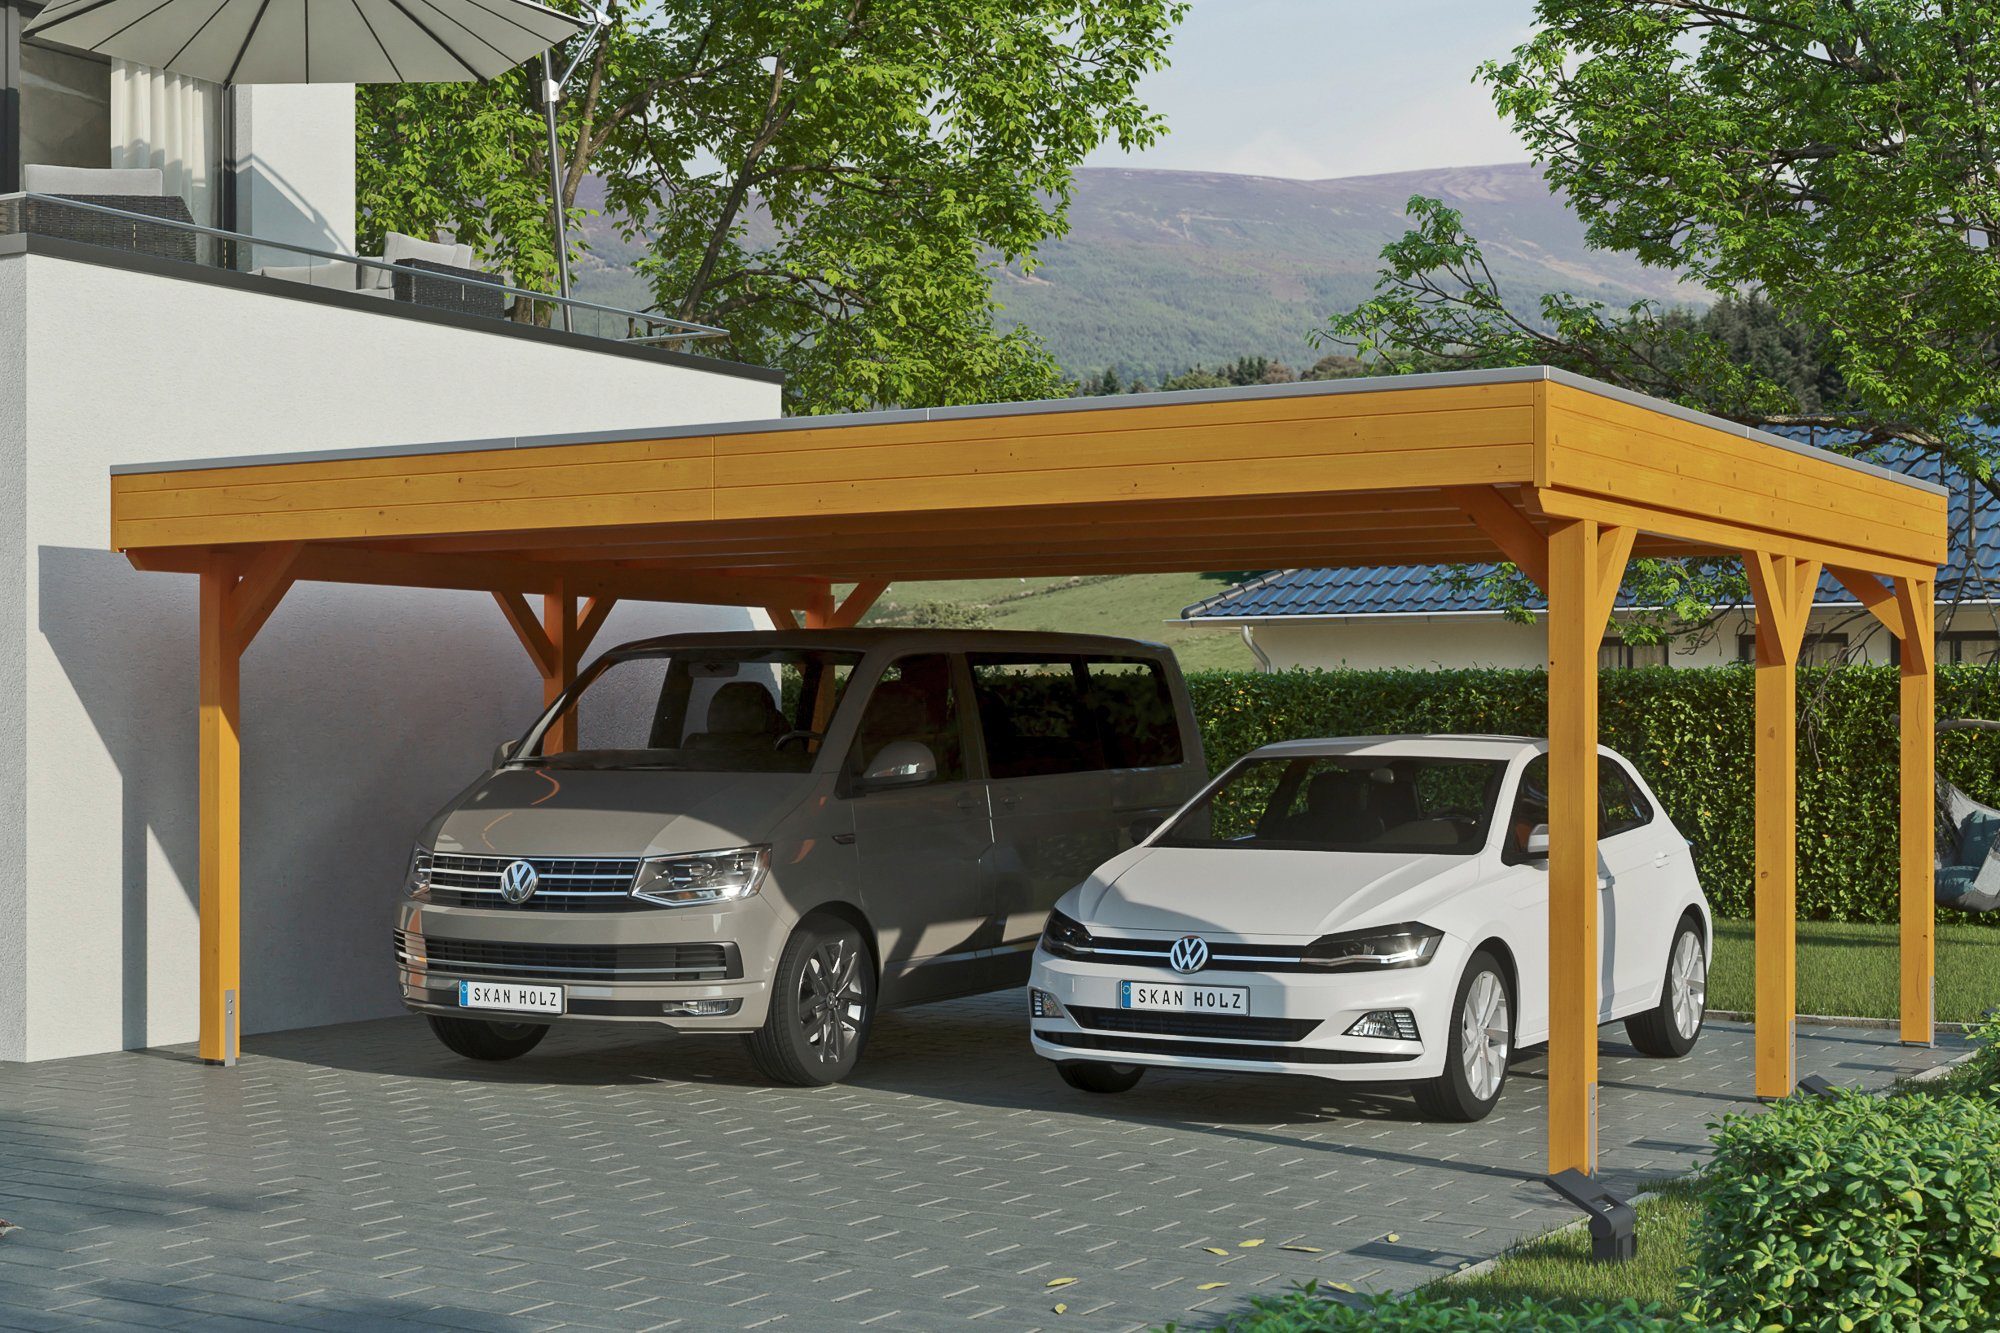 Skanholz Doppelcarport Grunewald, BxT: 622x554 cm, 590 cm Einfahrtshöhe,  mit EPDM-Dach, Flachdach-Carport, farblich behandelt in eiche hell